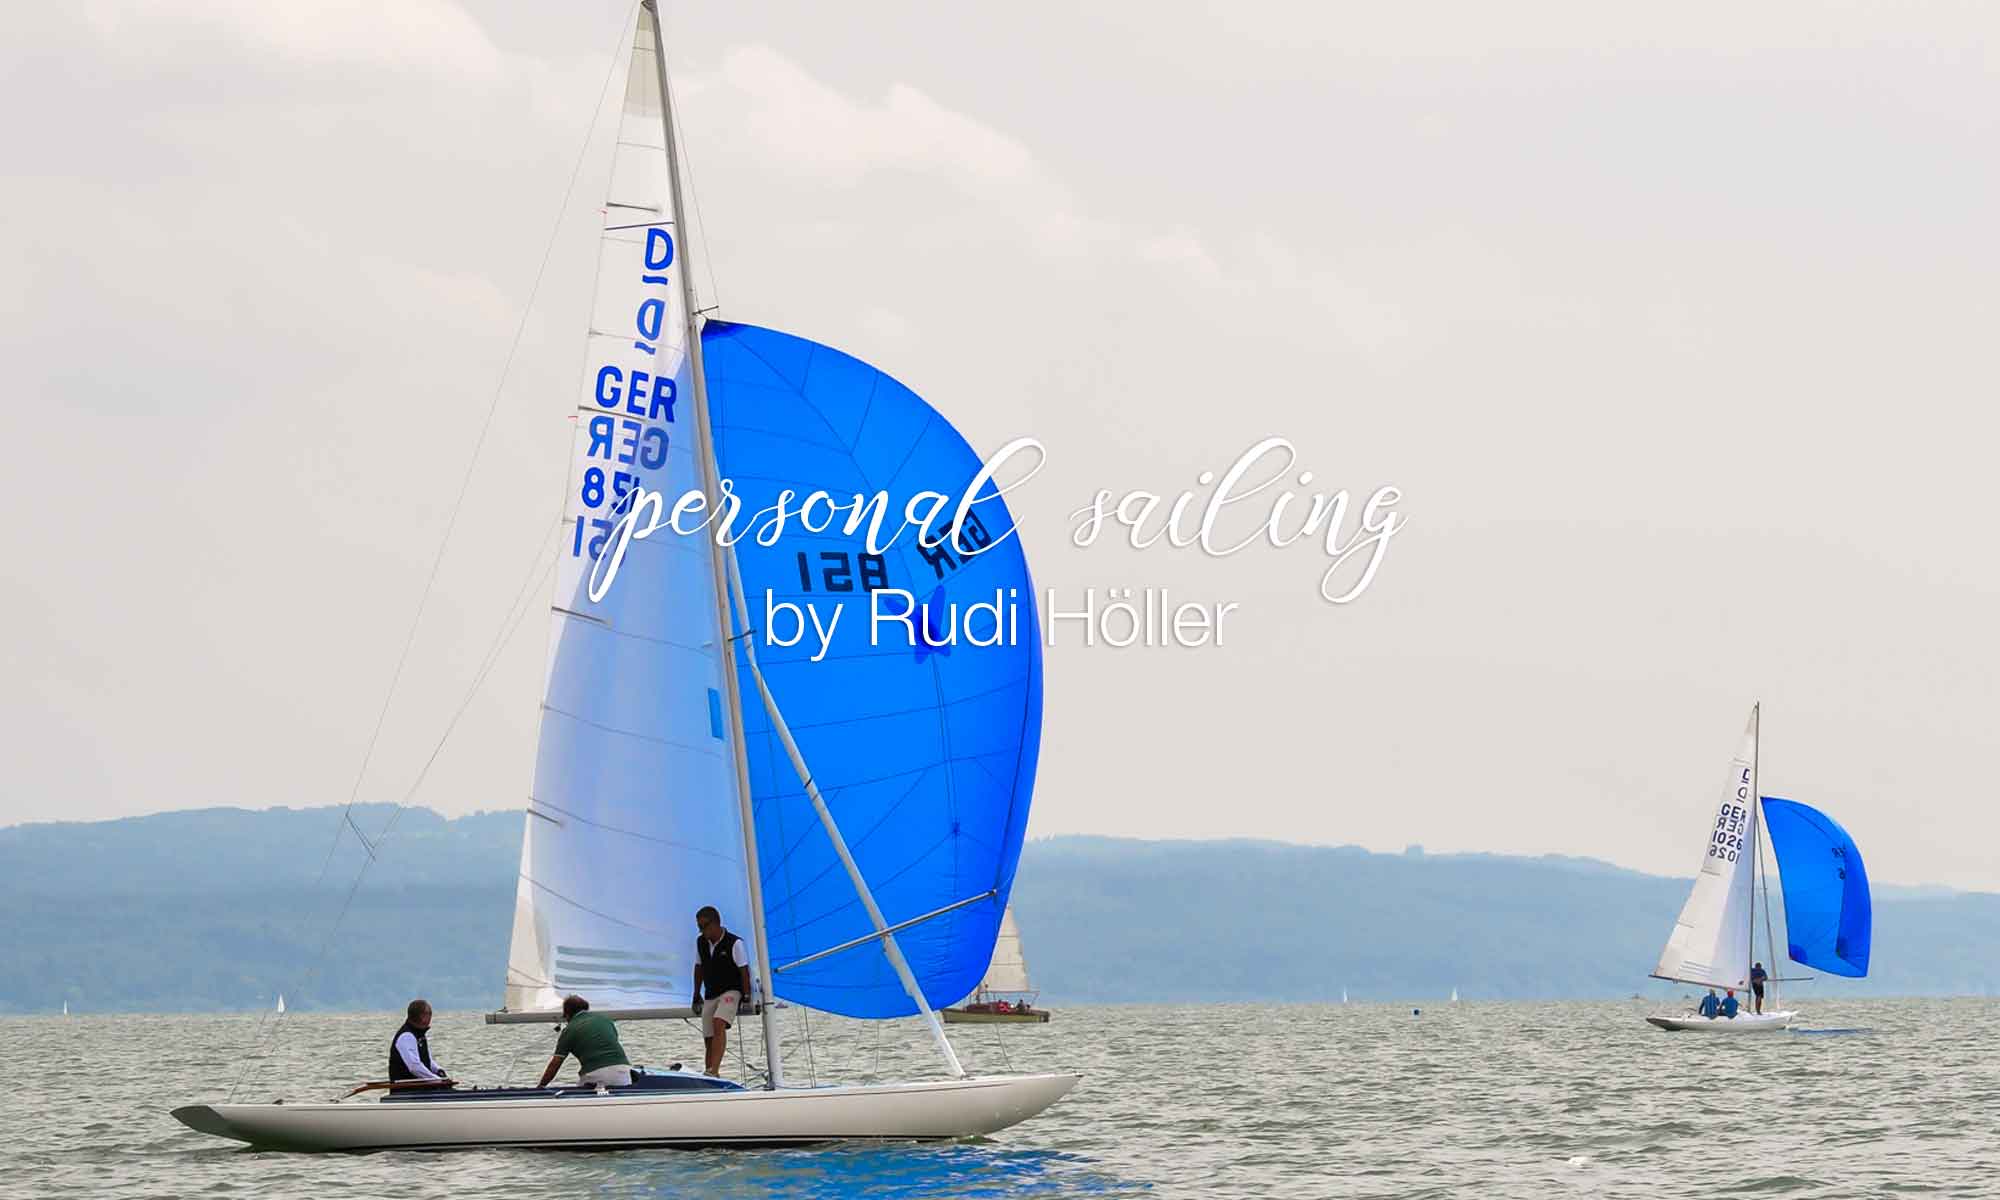 personal sailing by Rudi Höller Seminare Drachenklasse